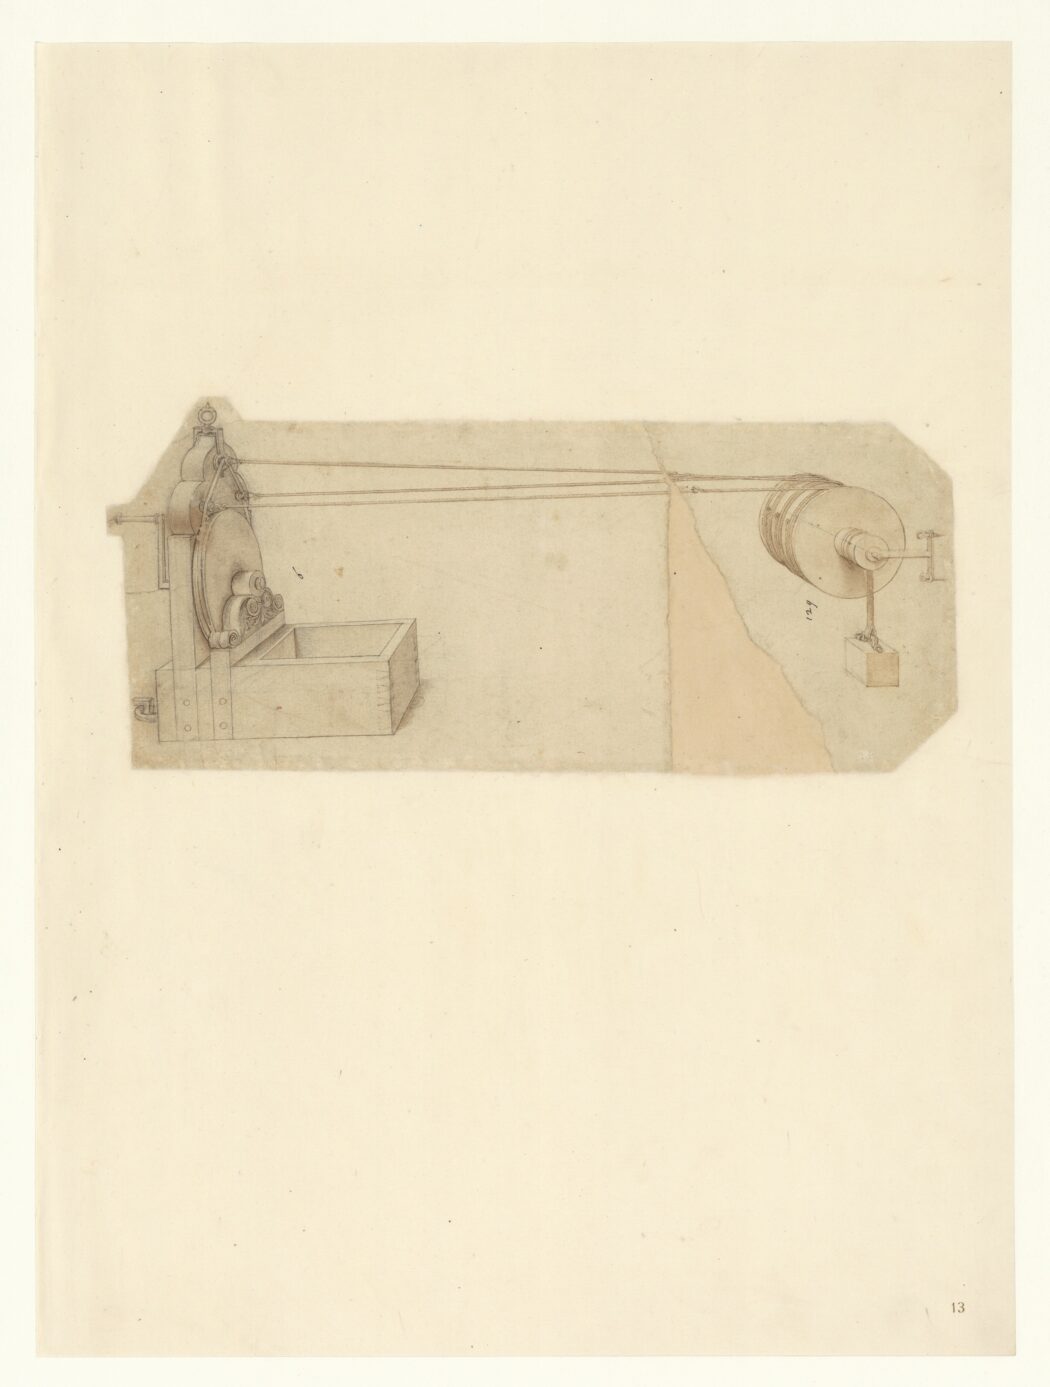 Leonardo da Vinci
Disegno di una macchina per fabbricare corde, Milano, Veneranda Biblioteca Ambrosiana, Codice Atlantico, 1513-1515 ca